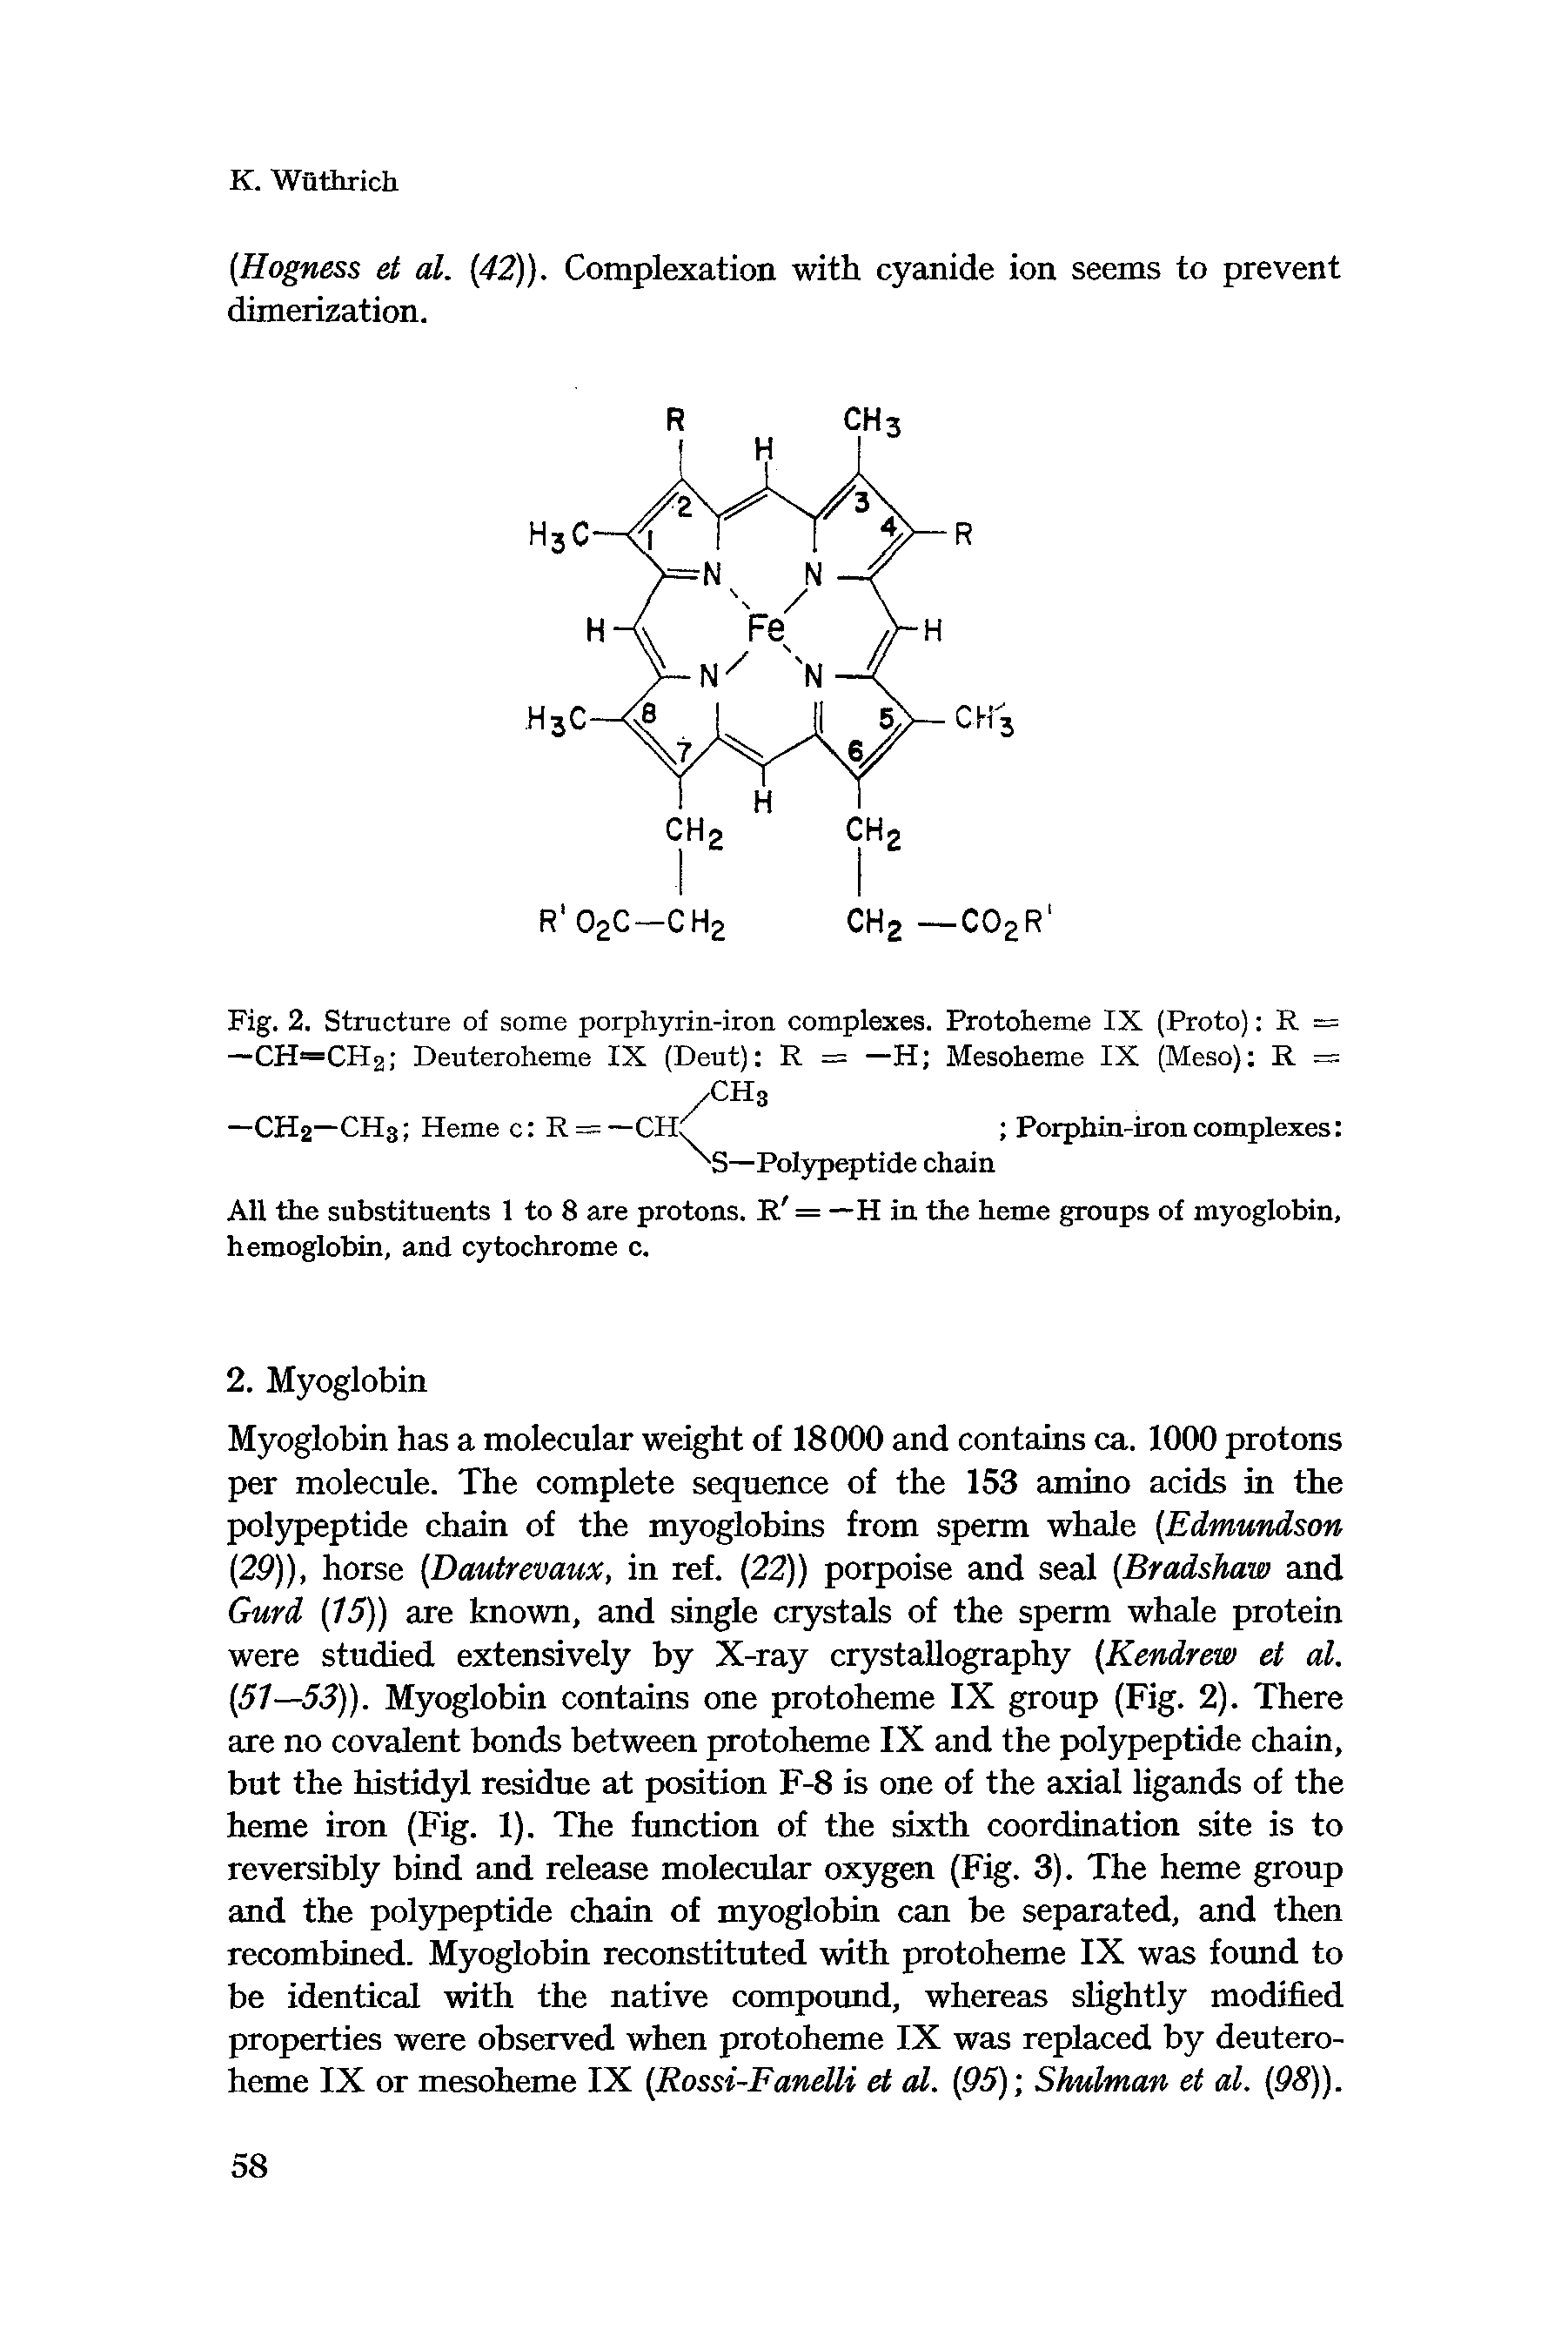 Fig. 2. Structure of some porphyrin-iron complexes. Protoheme IX (Proto) R = —CH=CH2 Deuteroheme IX (Deut) R = —H Mesoheme IX (Meso) R =...